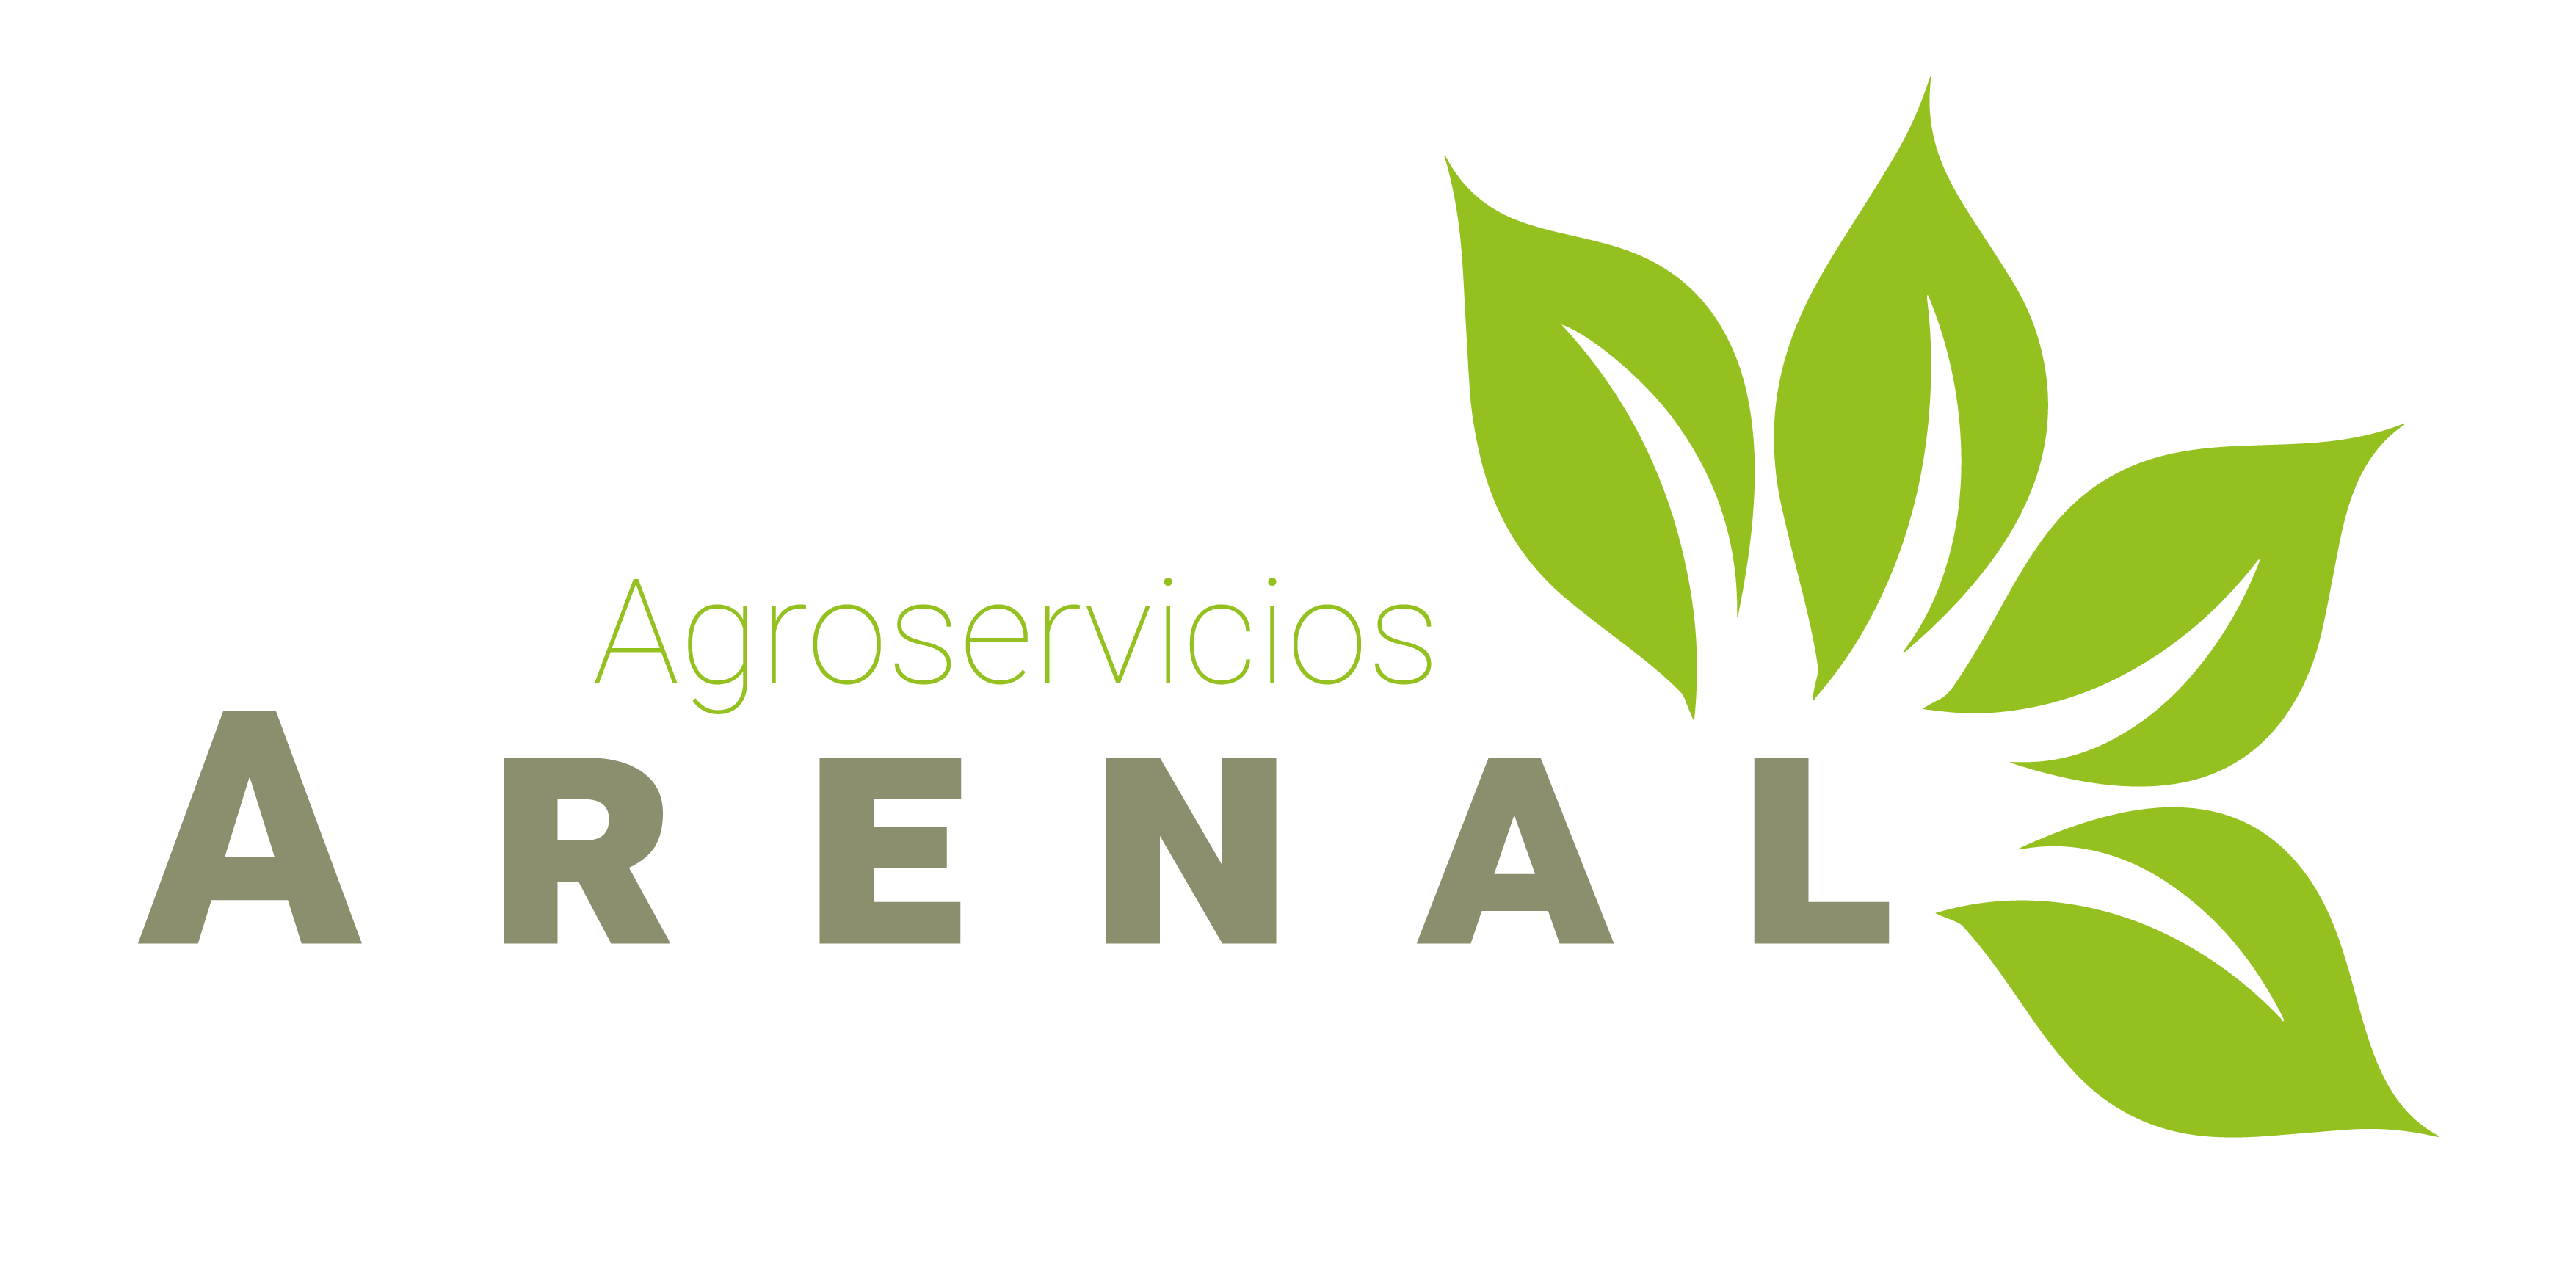 Agroservicios Arenal